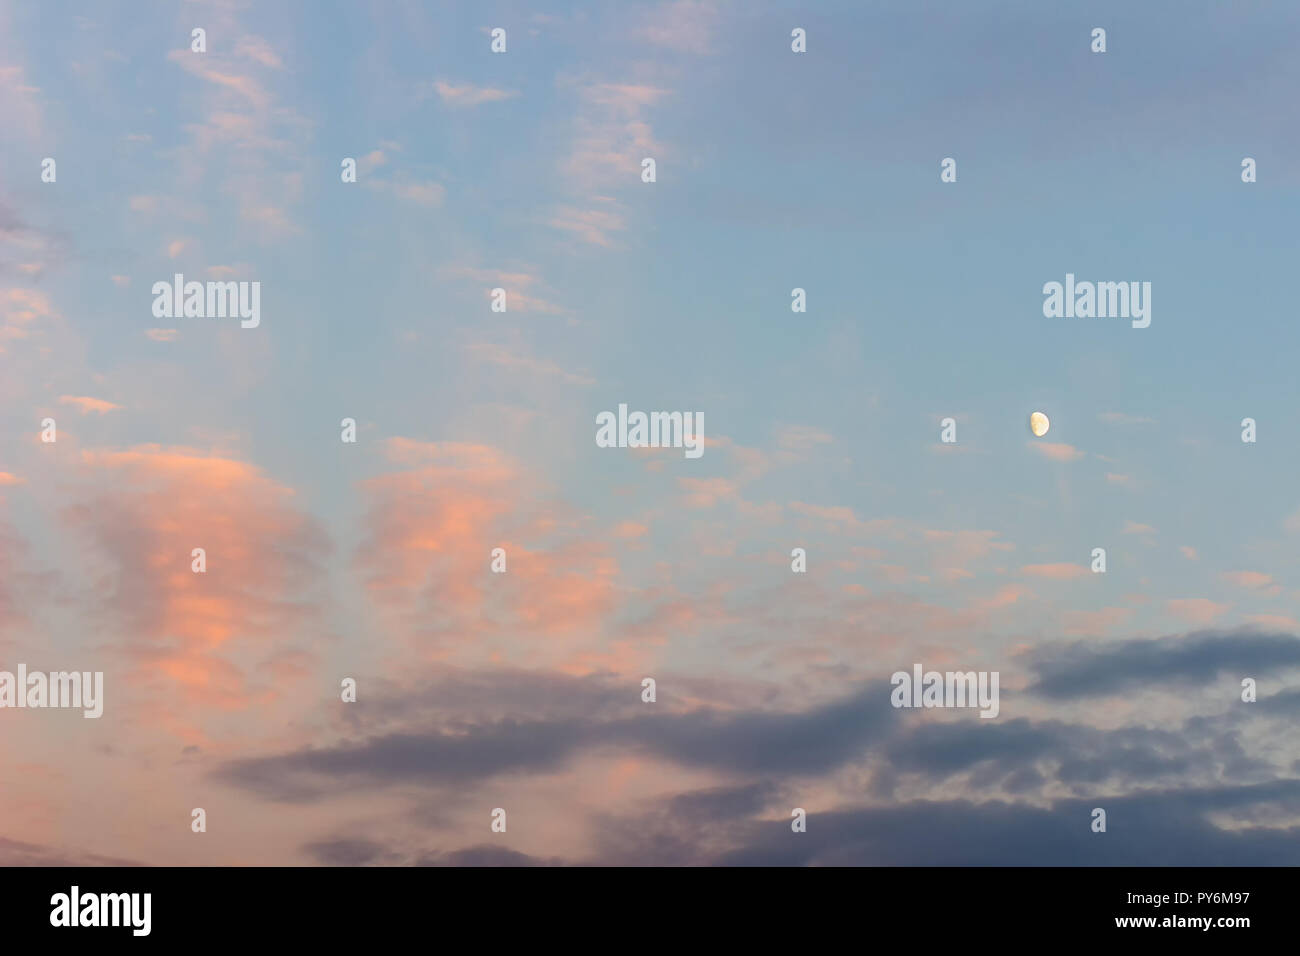 Sonnenuntergang Himmel mit lila und Dunkelblaue Wolken und Mond Stockfoto